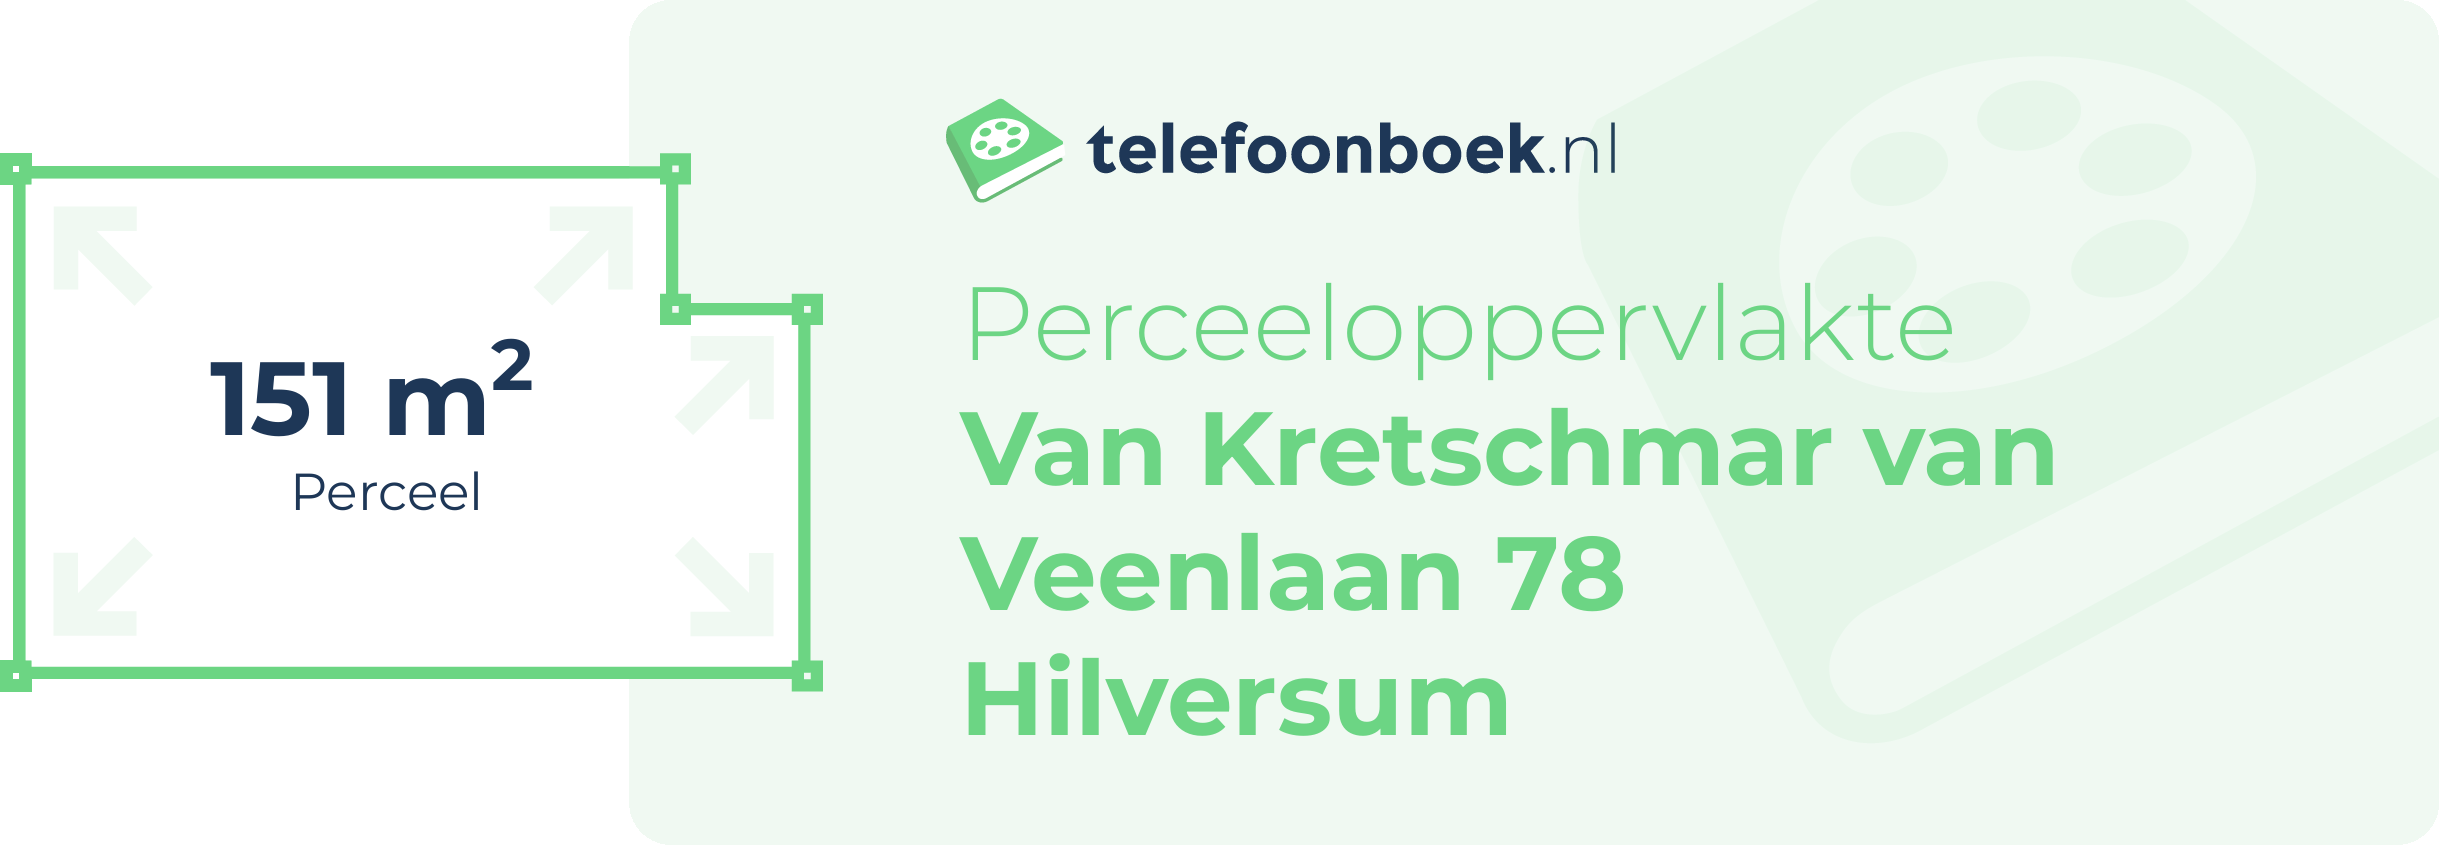 Perceeloppervlakte Van Kretschmar Van Veenlaan 78 Hilversum